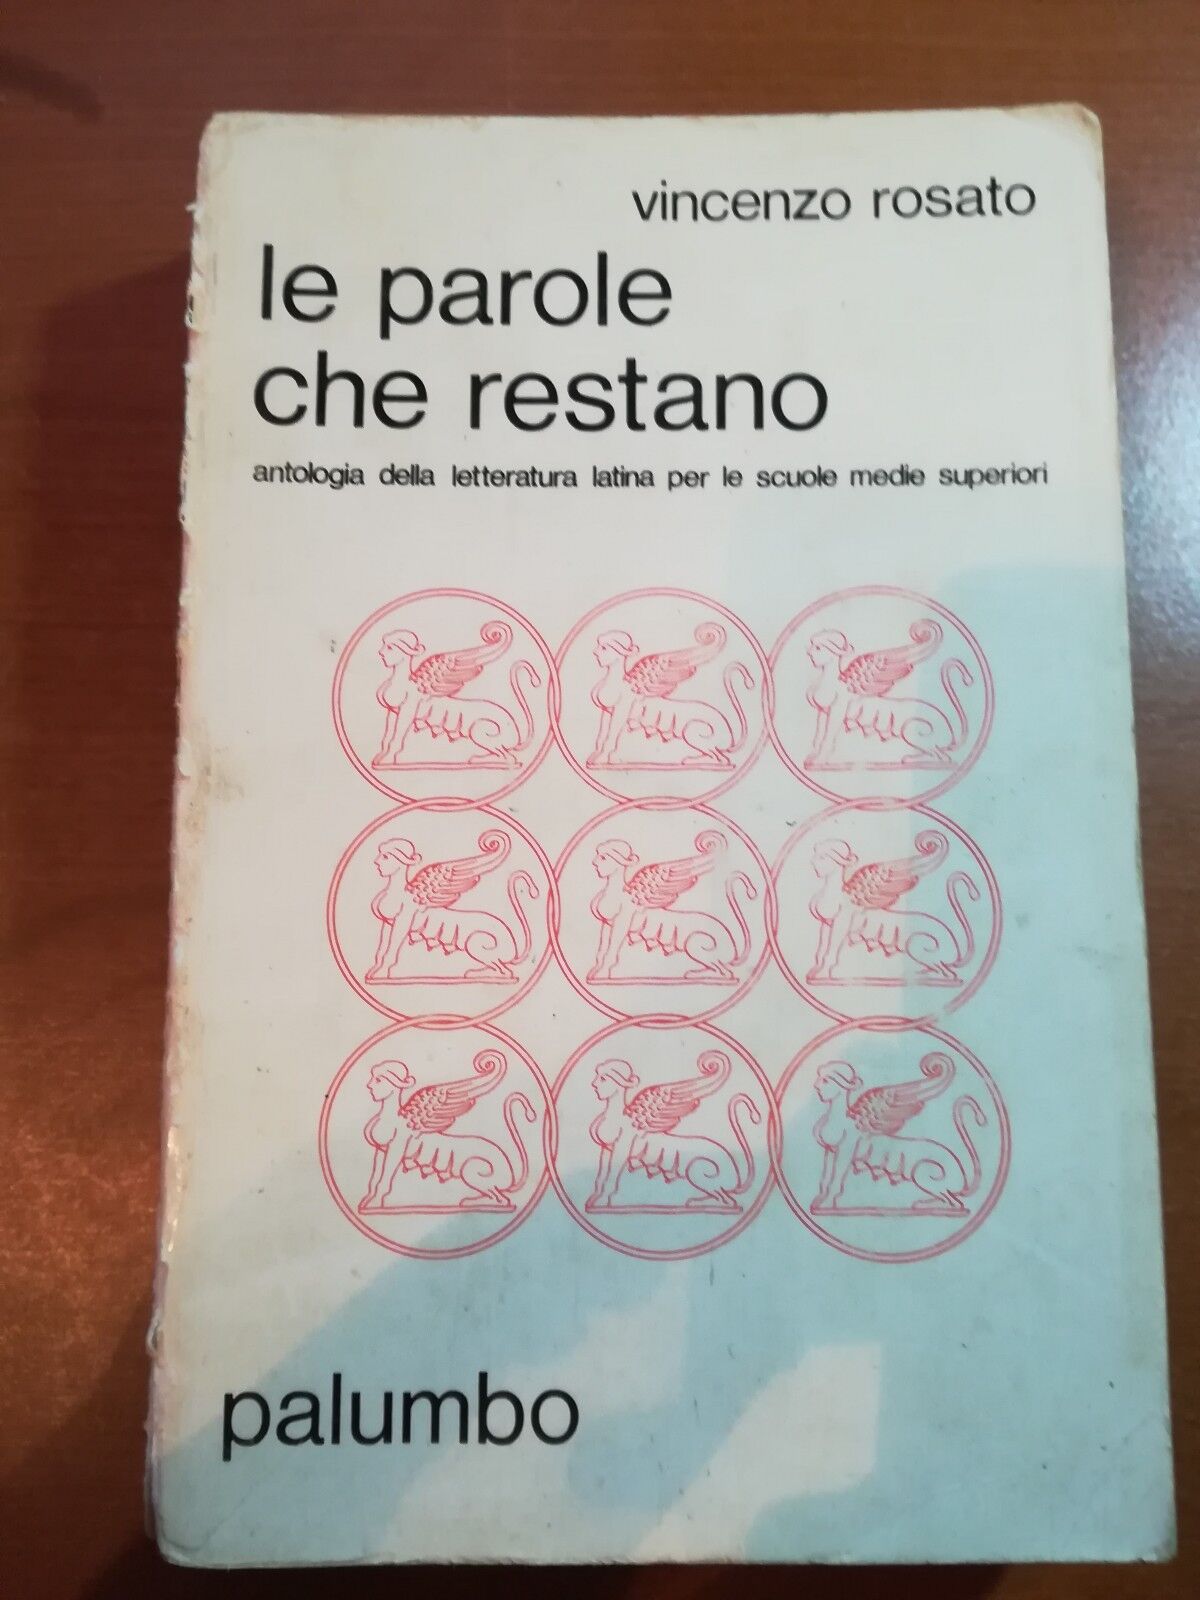 Le parole che restano - Vincenzo Rosato - Palumbo - 1981 - M